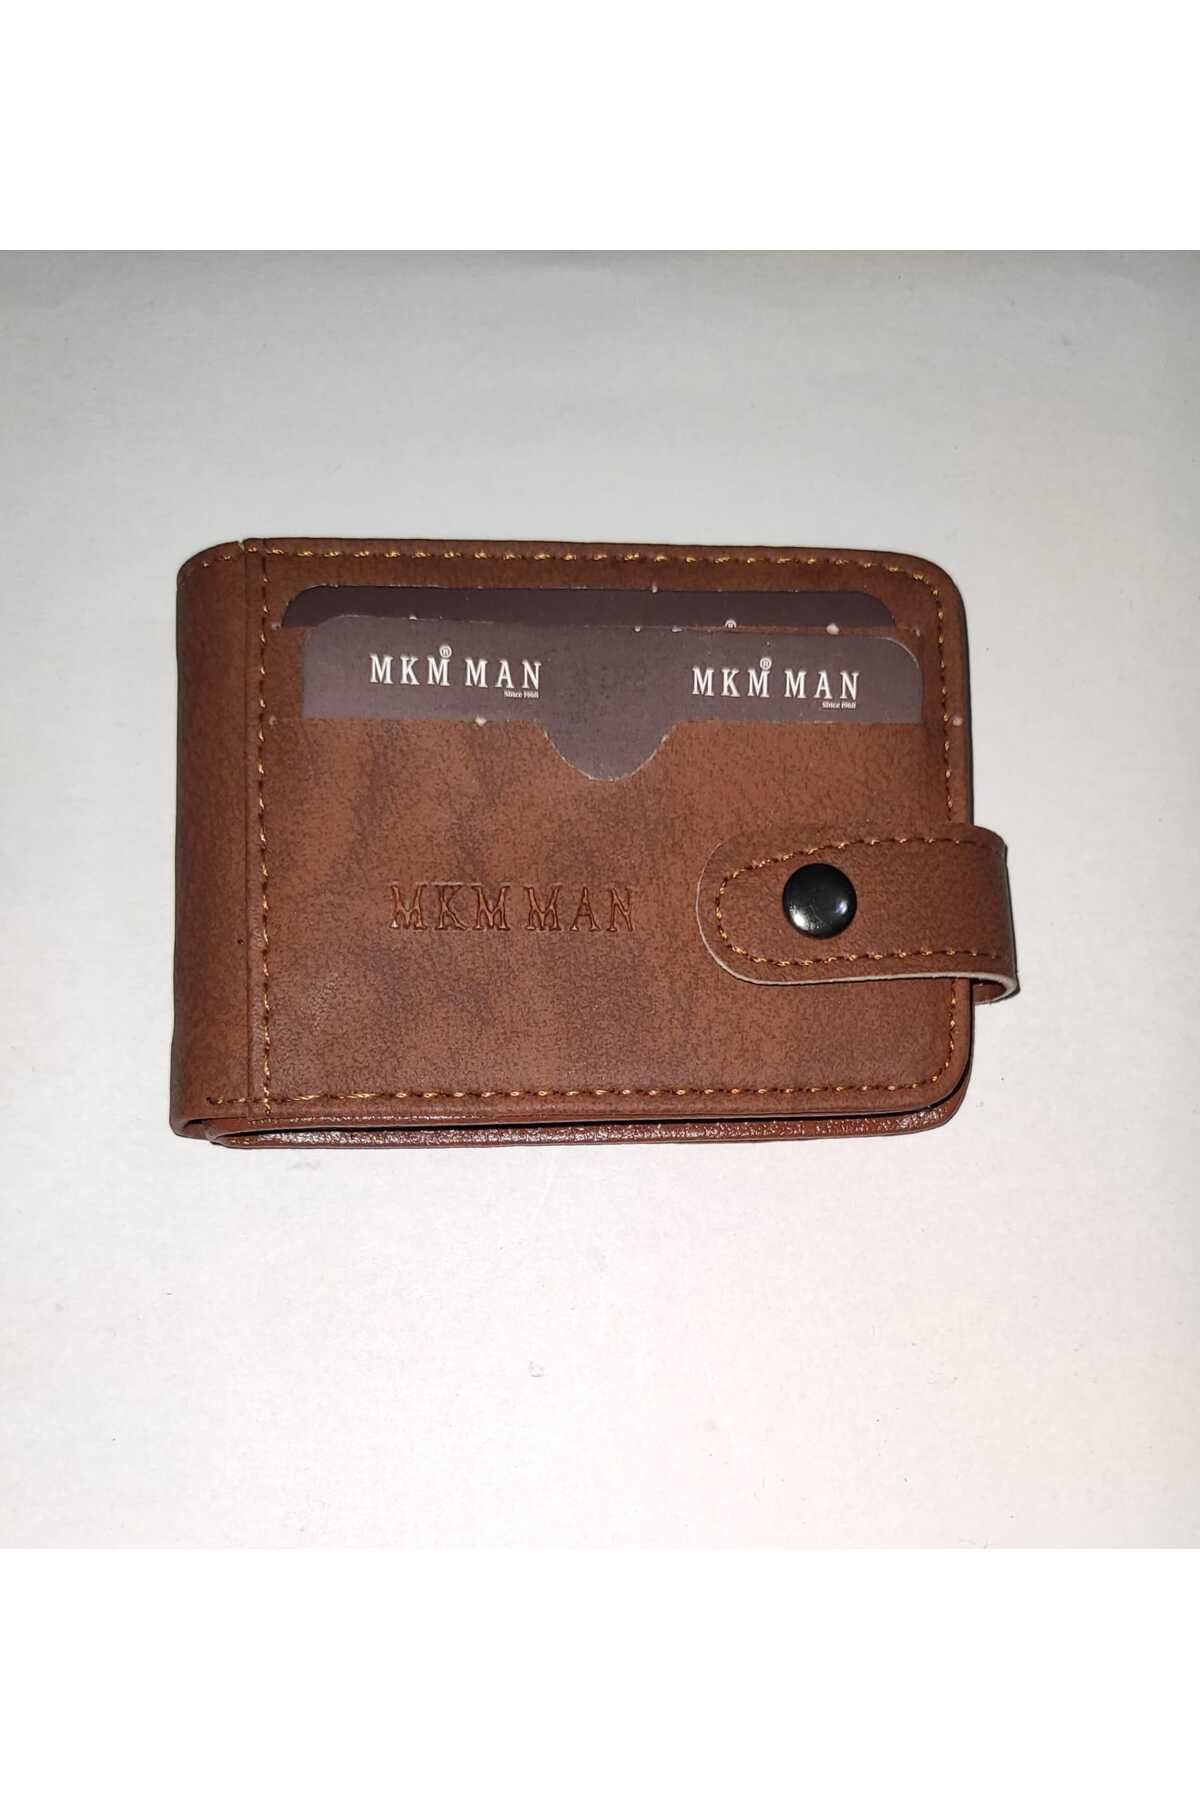 firdevsi hobi nubuk yatay çıtlı muhafazalı 10 şeffaf kartlık cüzdan